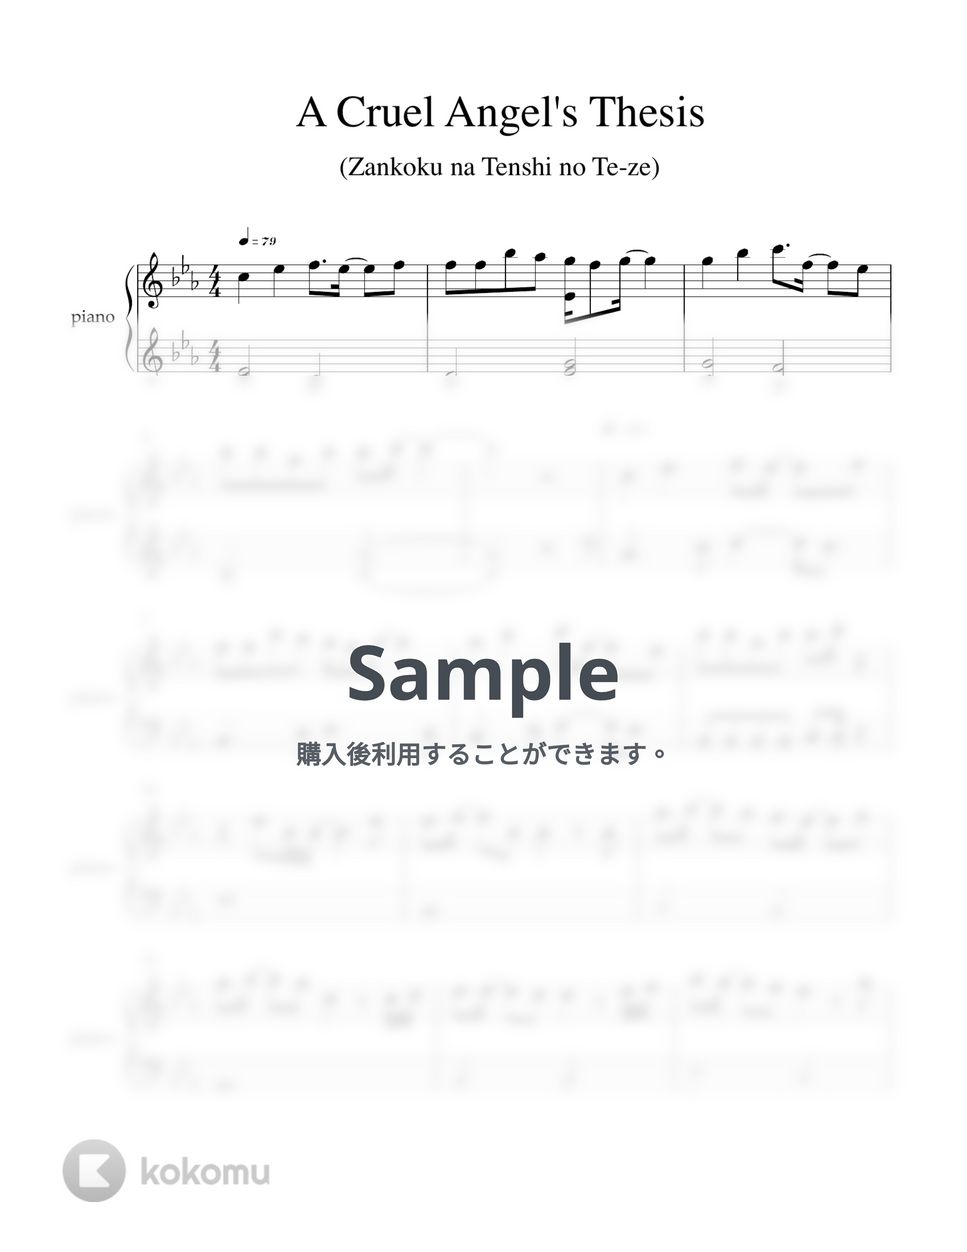 高橋洋子 - 残酷な天使のテーゼ (新世紀エヴァンゲリオン / ピアノ初心者向け) by Piano Lovers. jp